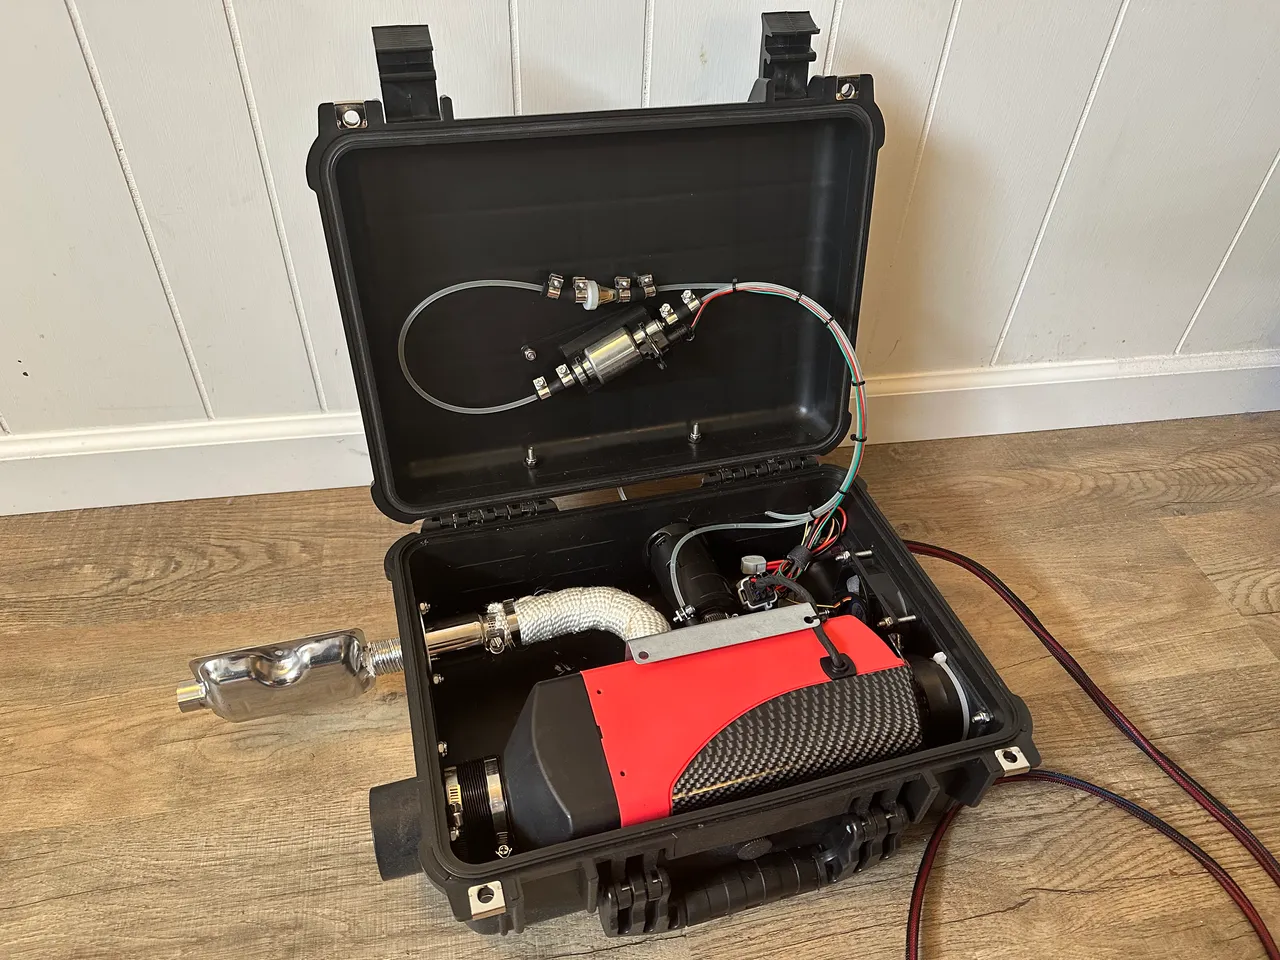 Diesel Heater in a Weatherproof Case by kluiten